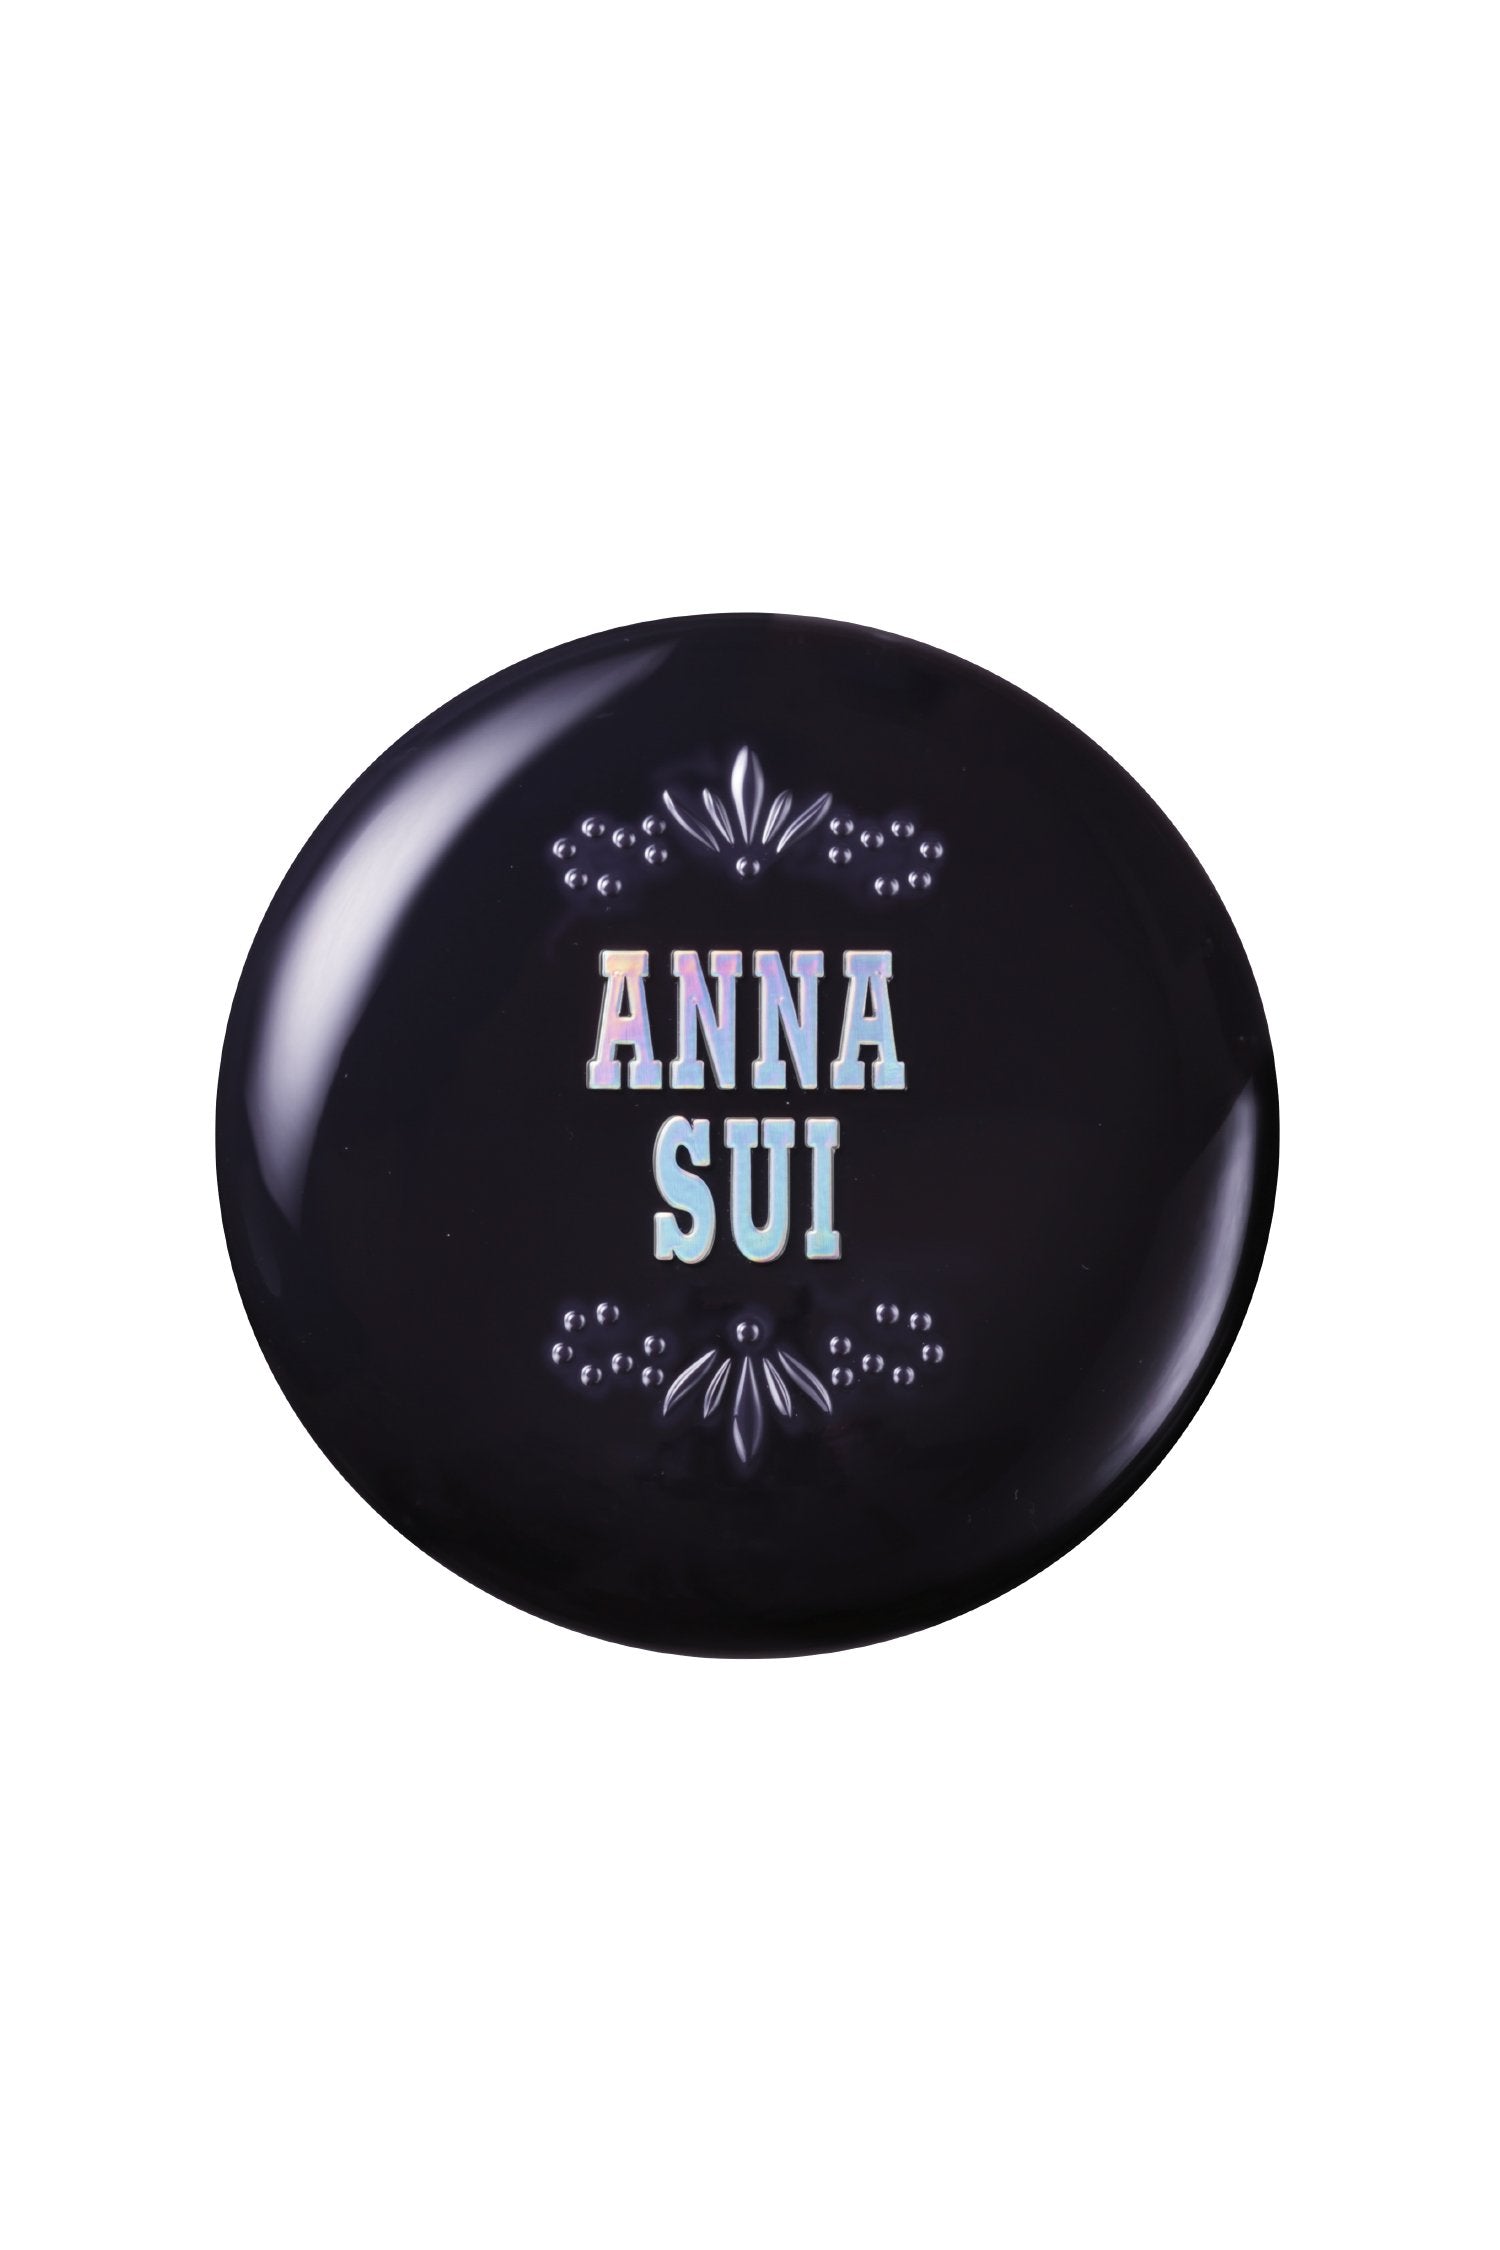 New: Brightening Powder - Anna Sui